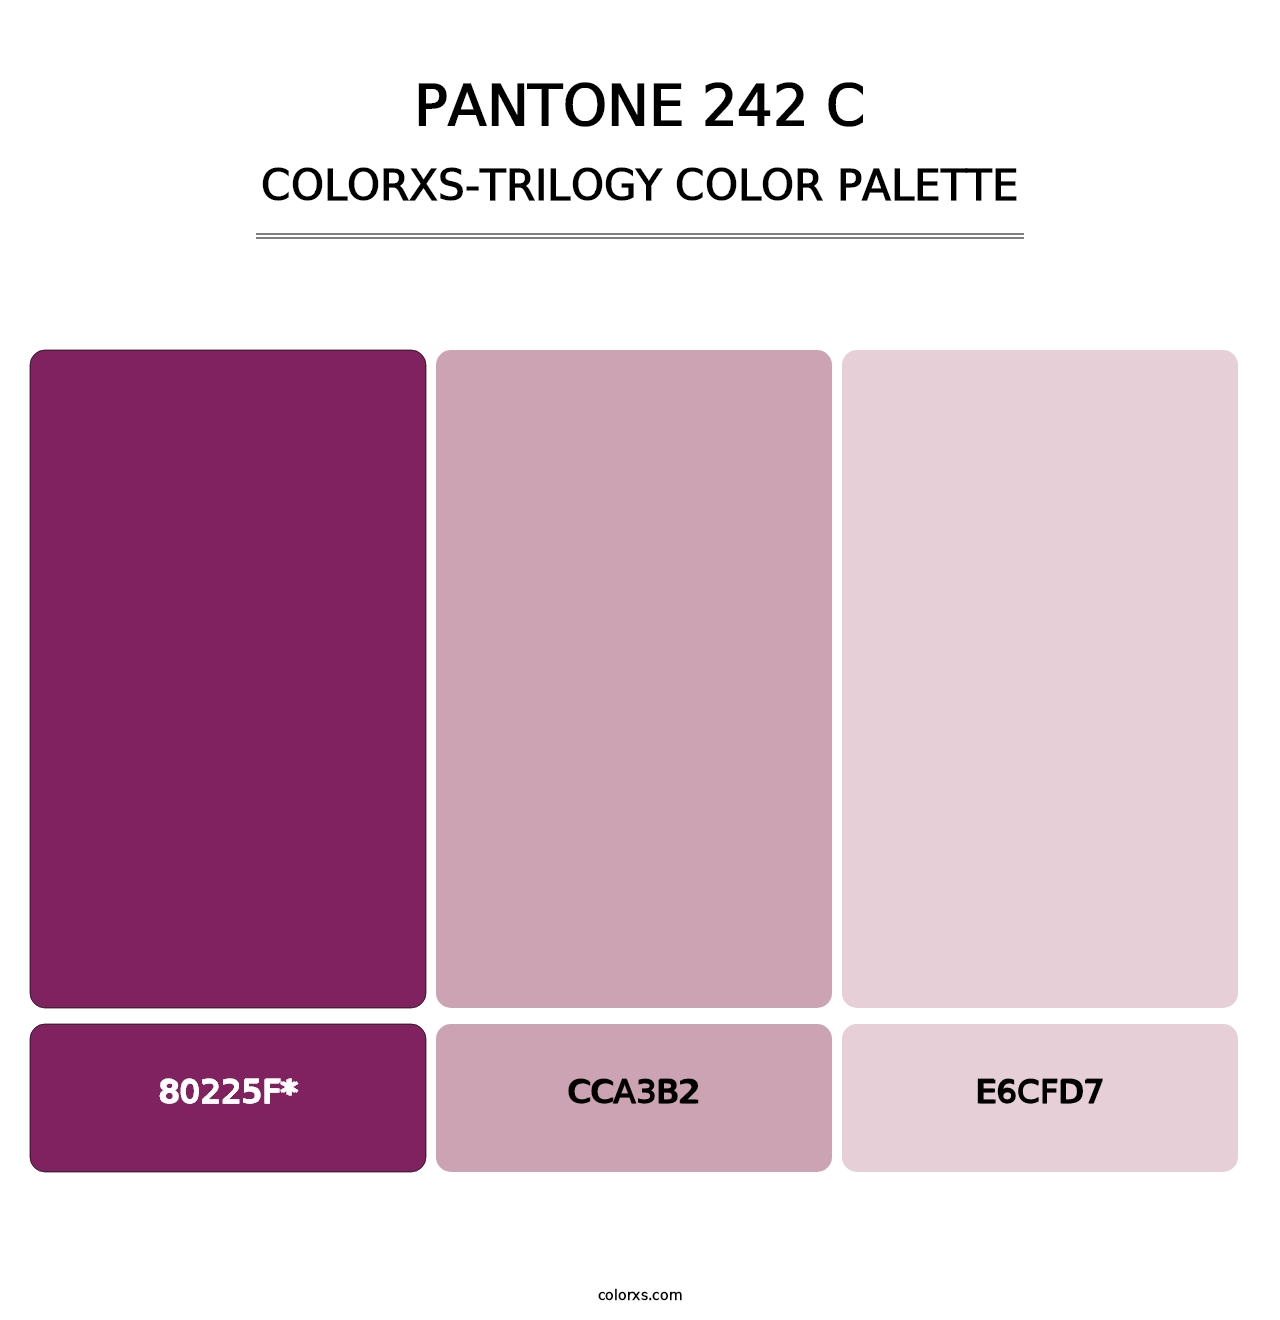 PANTONE 242 C - Colorxs Trilogy Palette